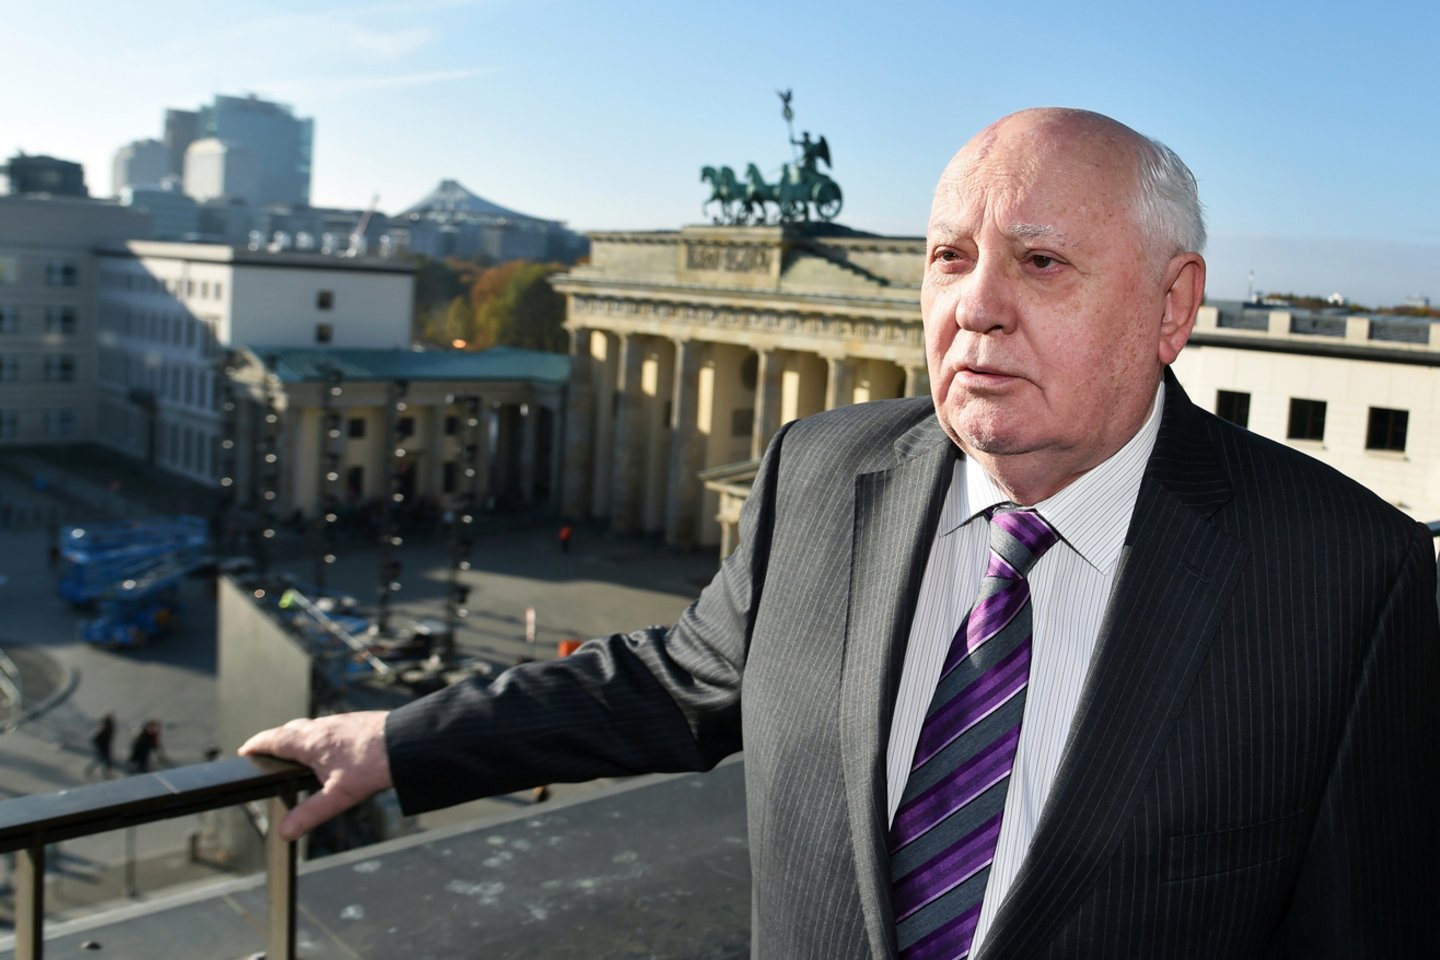  Buvęs Sovietų sąjungos lyderis Michailas Gorbačiovas paguldytas į ligoninę.<br> AFP/„Scanpix" nuotr.